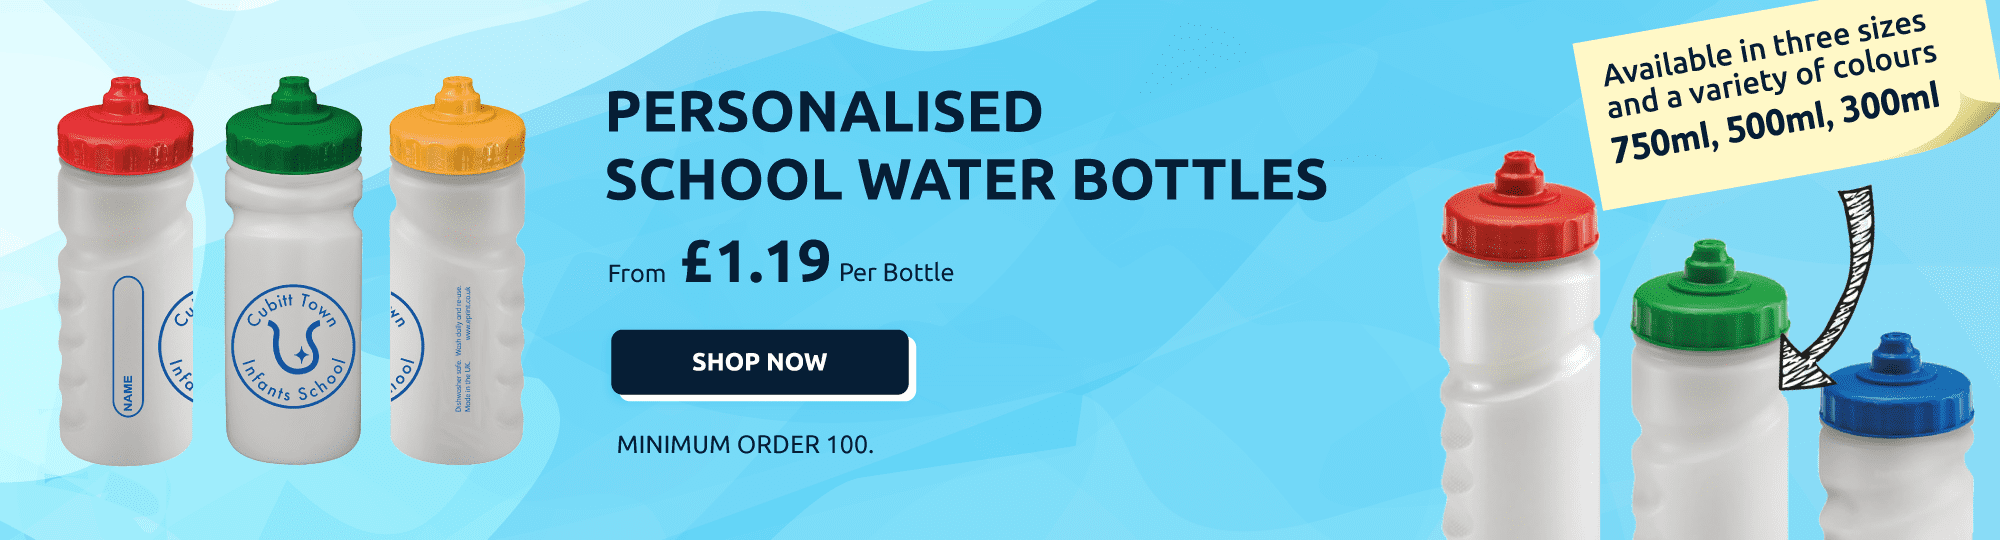 Personalised School Water Bottles